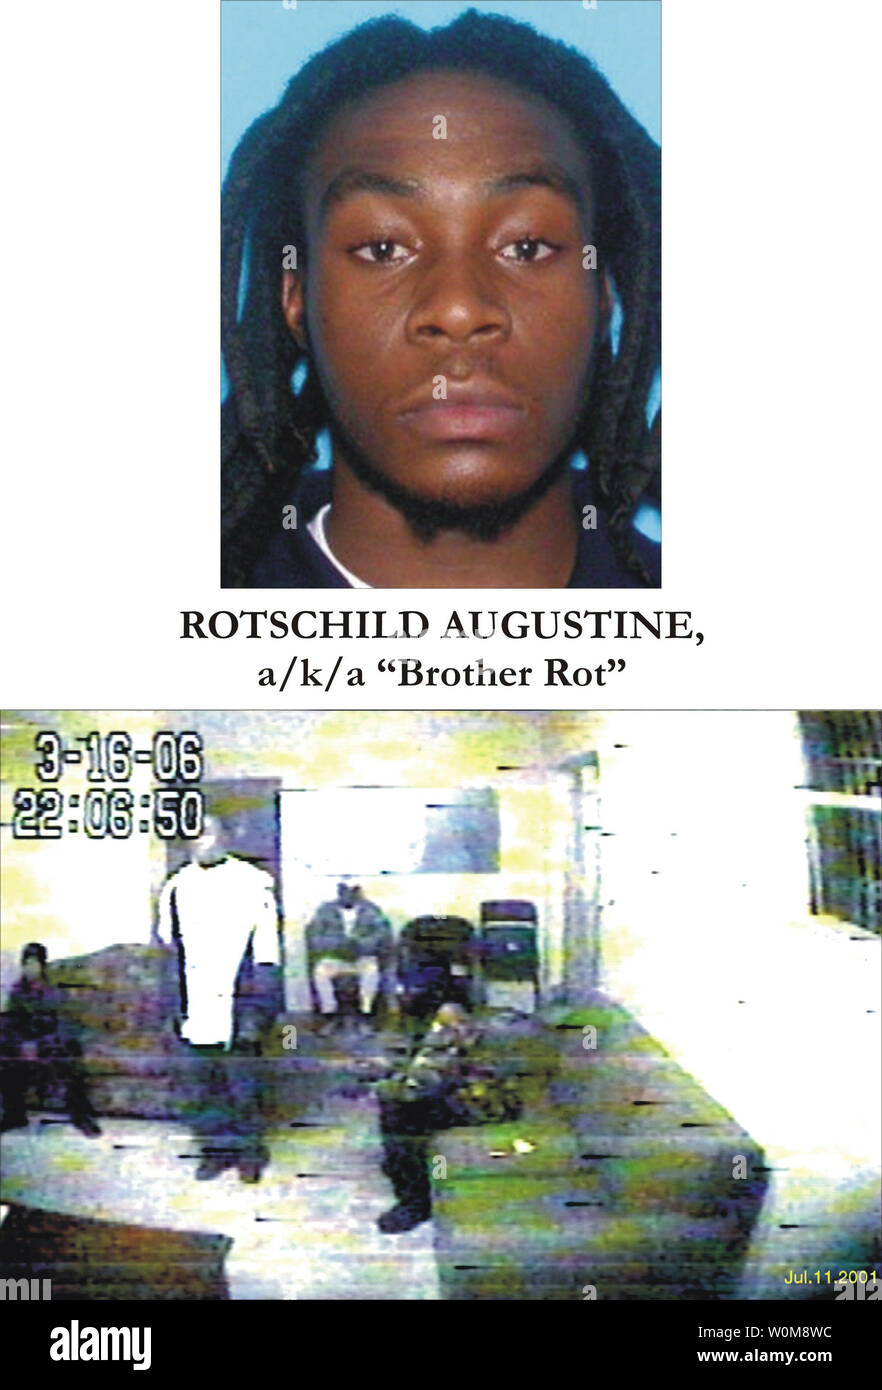 Rotschild Augustine, alias 'frère', a été arrêté en lien avec un complot terroriste à Miami, le 23 juin 2006. Sept personnes ont été arrêtées dans la région de Federal Bureau of Investigation (FBI) raids dans Miami. Les autorités américaines affirment un complot impliquant Al-qaïda dans le cadre d'une "guerre contre le gouvernement américain.' selon l'accusation, les cinq Américains, un peuple haïtien et d'un autre étranger, organisé un complot pour attaquer les 442 mètres (1 450 pieds) de haut la Sears Tower, le troisième plus grand bâtiment, et aussi immeubles de Miami. Ils devaient faire leur première comparution en cour aujourd'hui, selon les responsables. (UPI Ph Banque D'Images